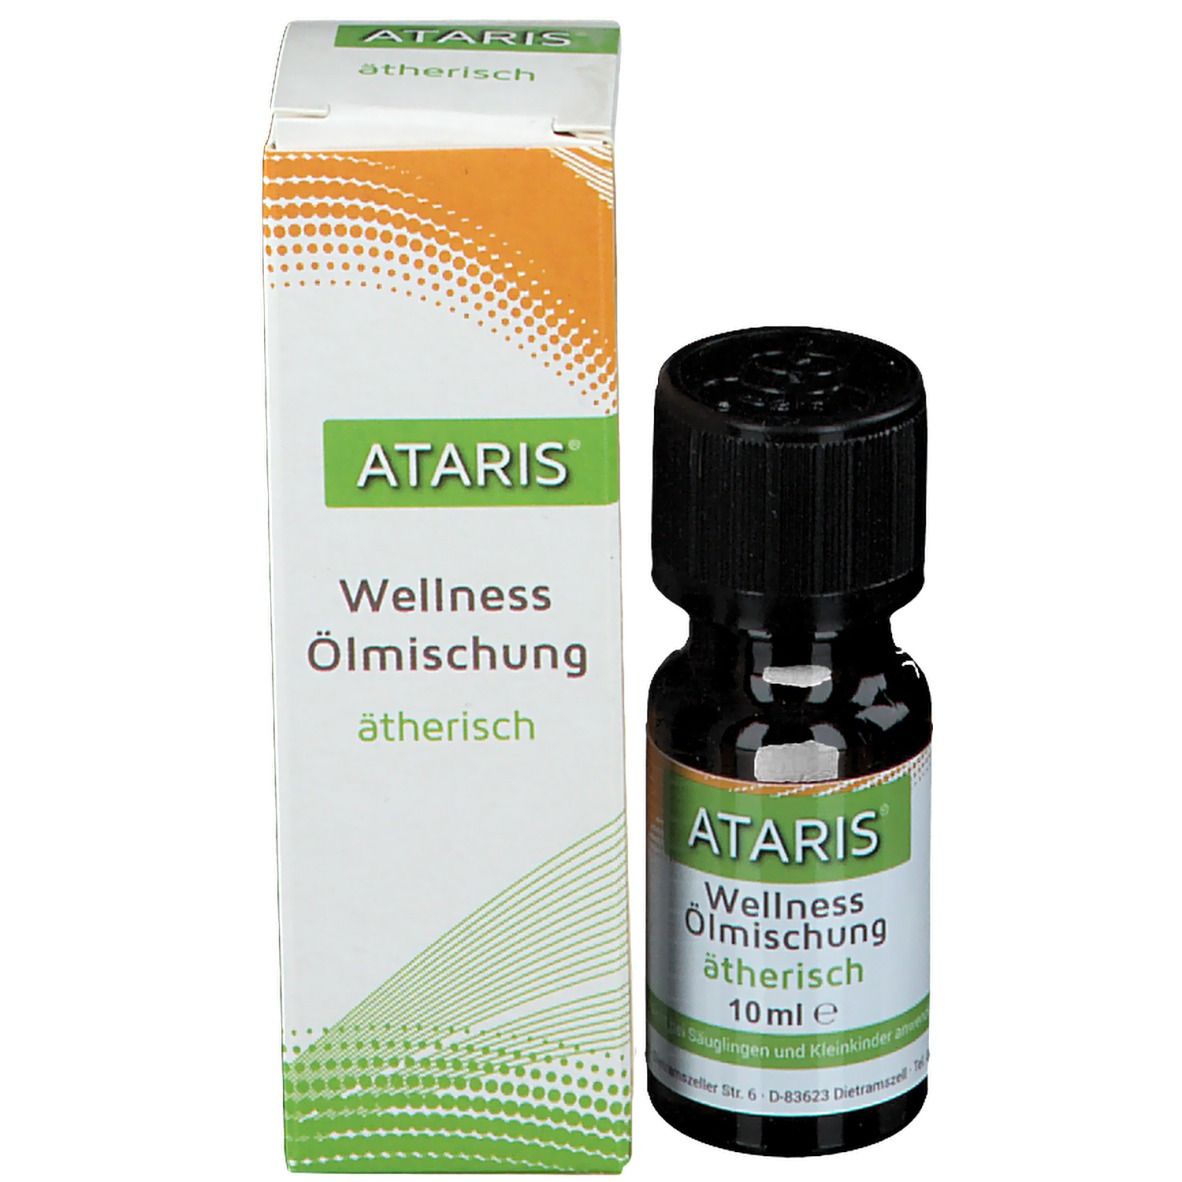 ATARIS® Wellness Ölmischung ätherisch